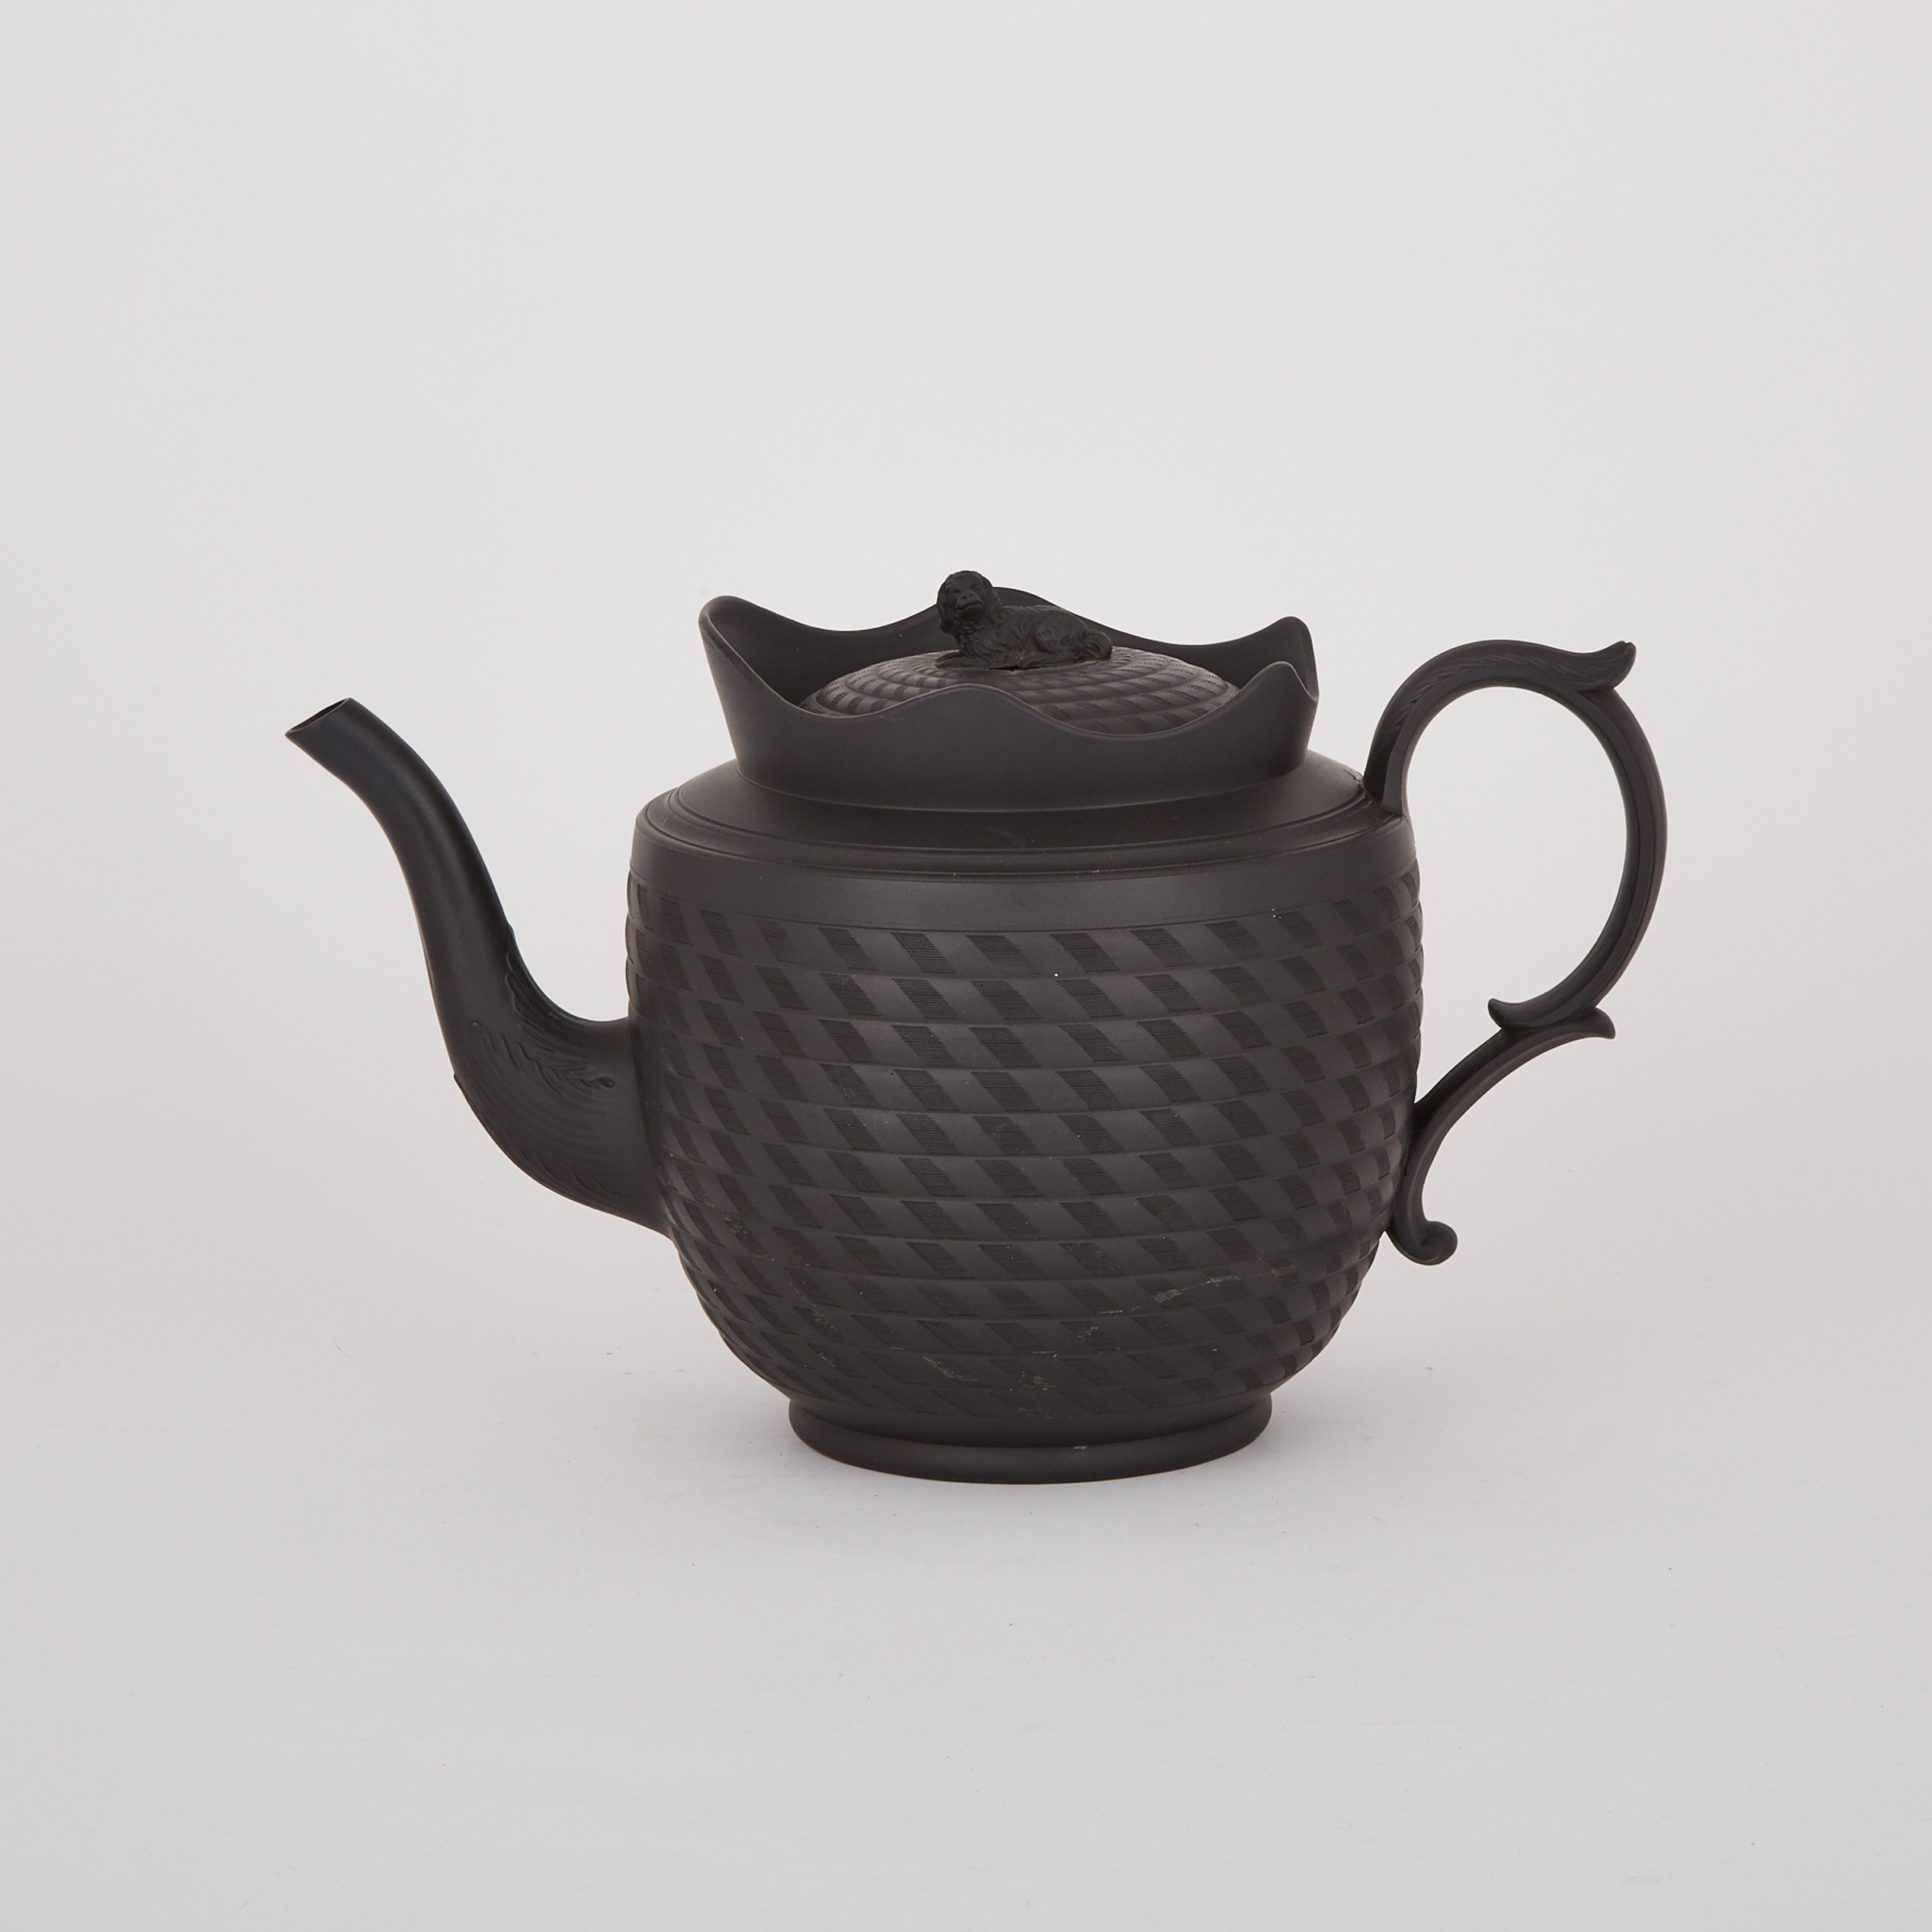 English Black Basalt Large Teapot, 19th century